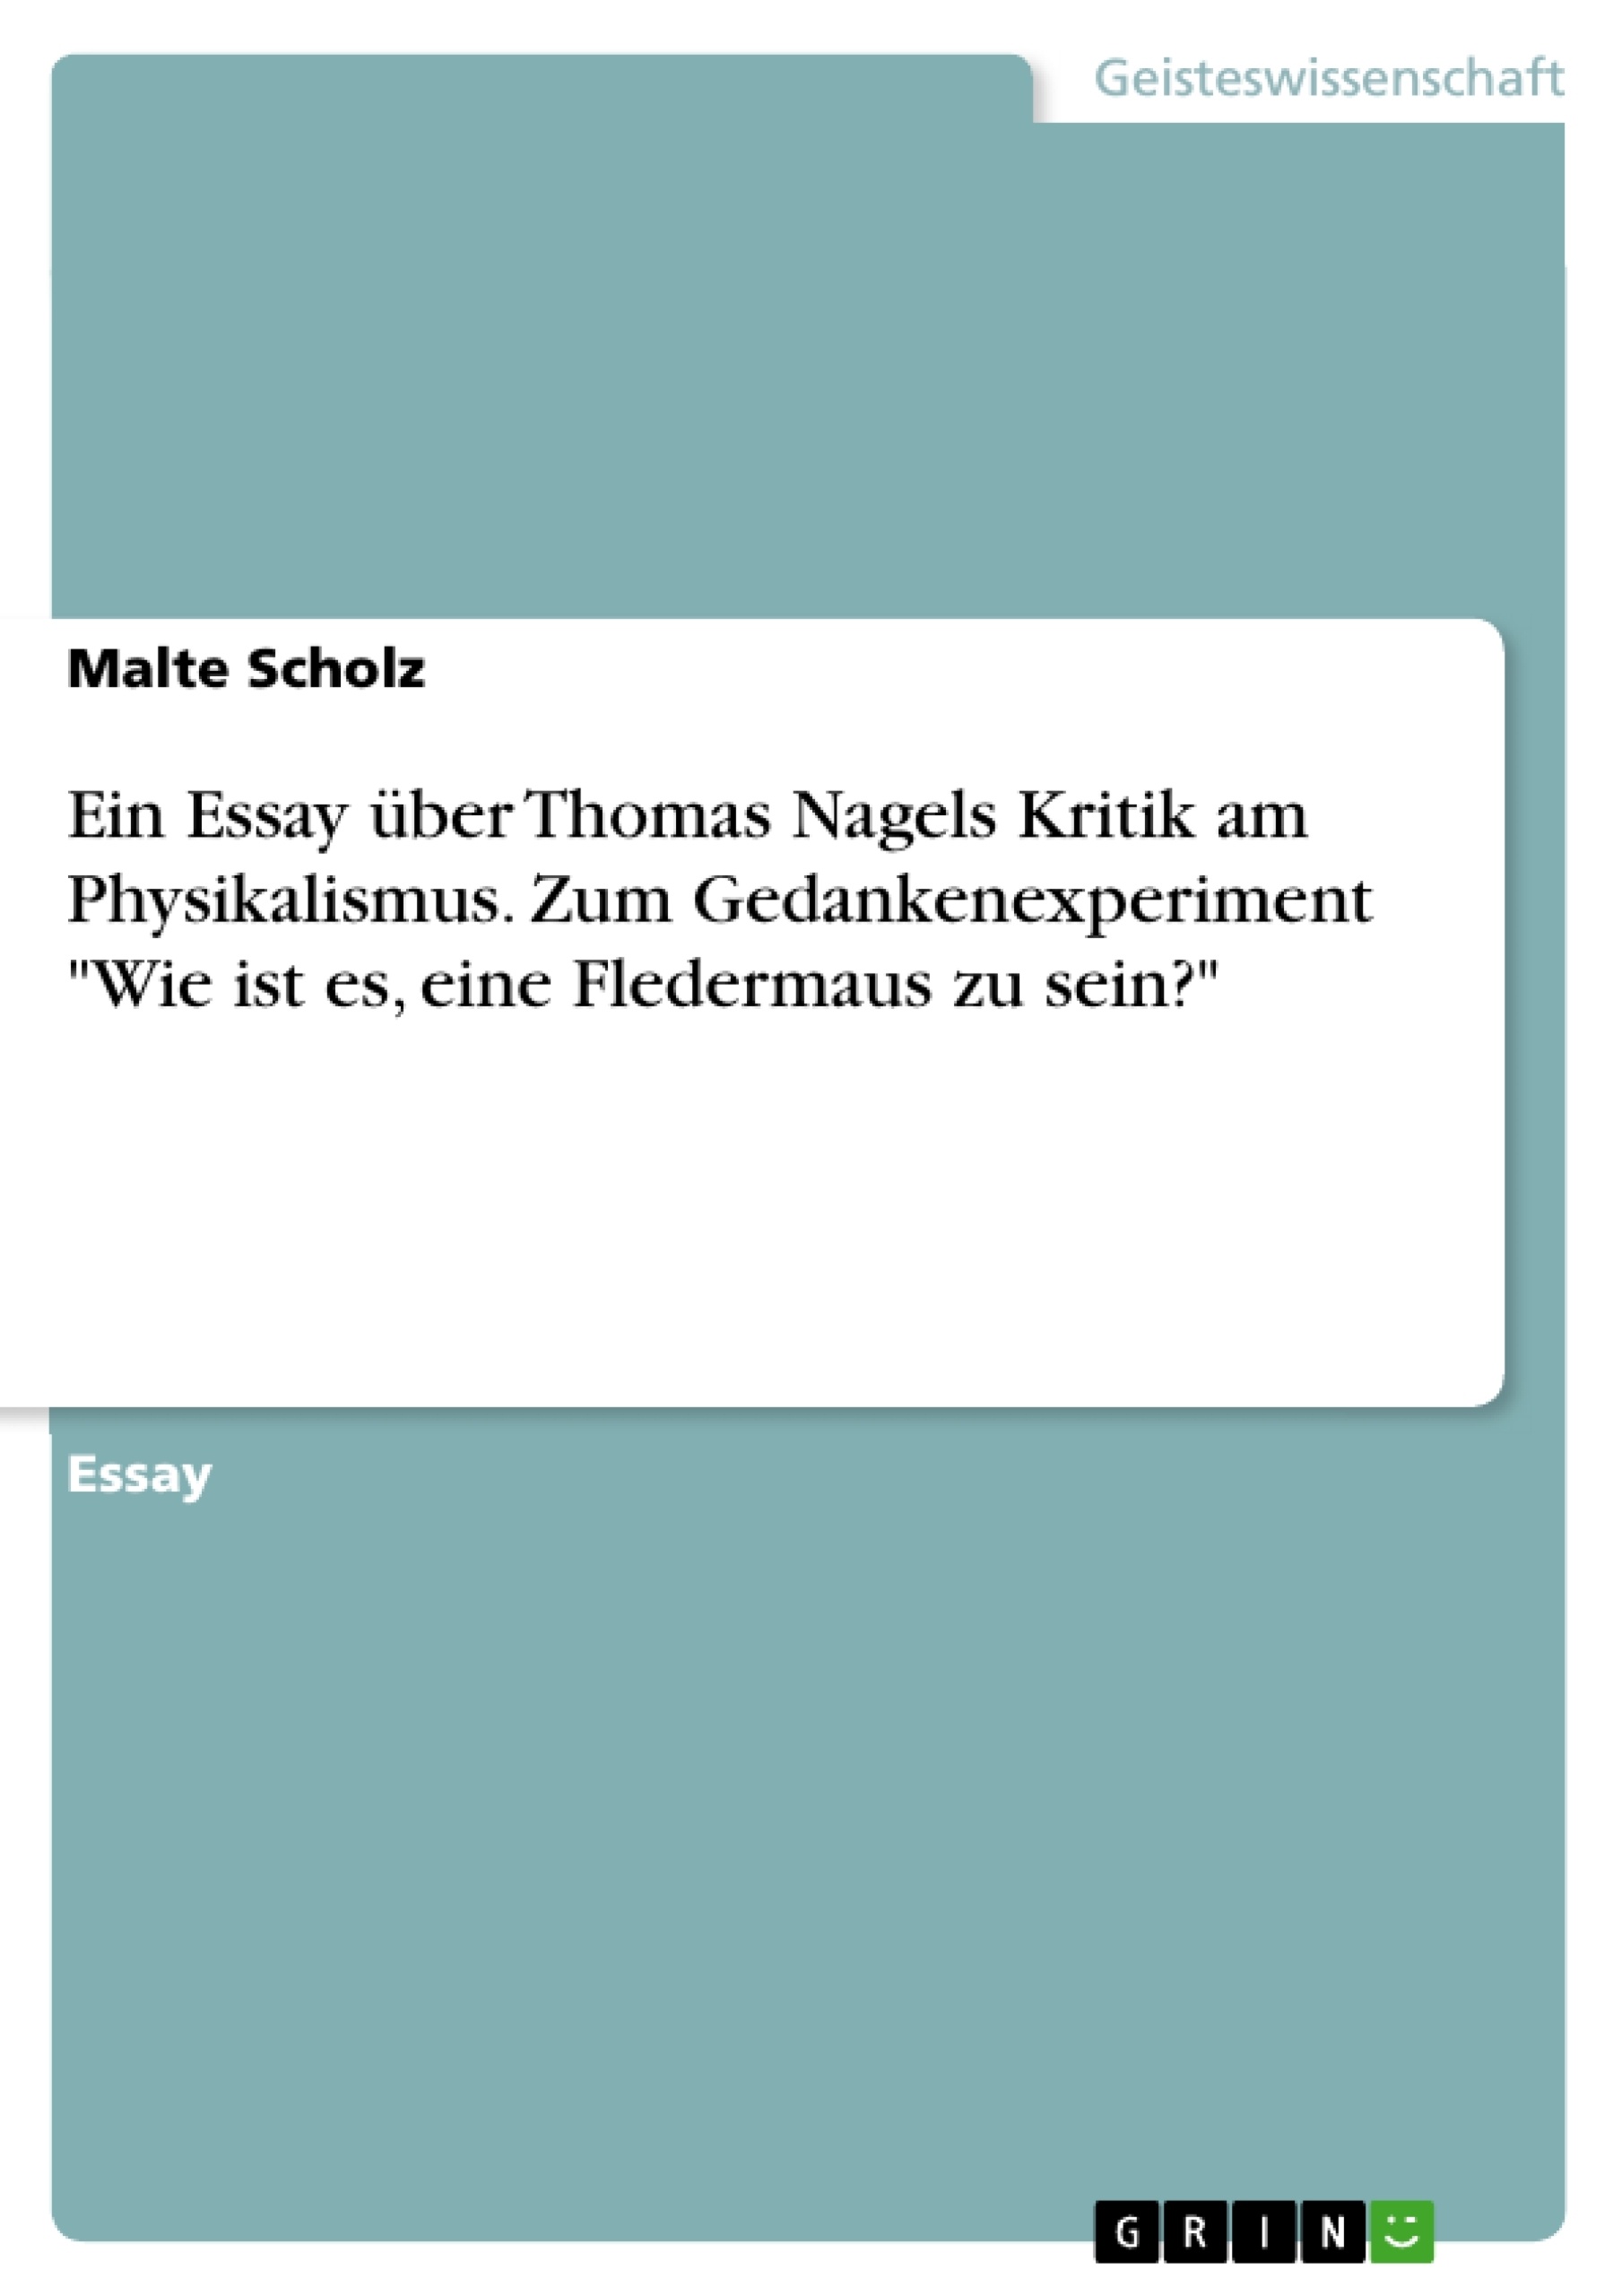 Titel: Ein Essay über Thomas Nagels Kritik am Physikalismus. Zum Gedankenexperiment "Wie ist es, eine Fledermaus zu sein?"